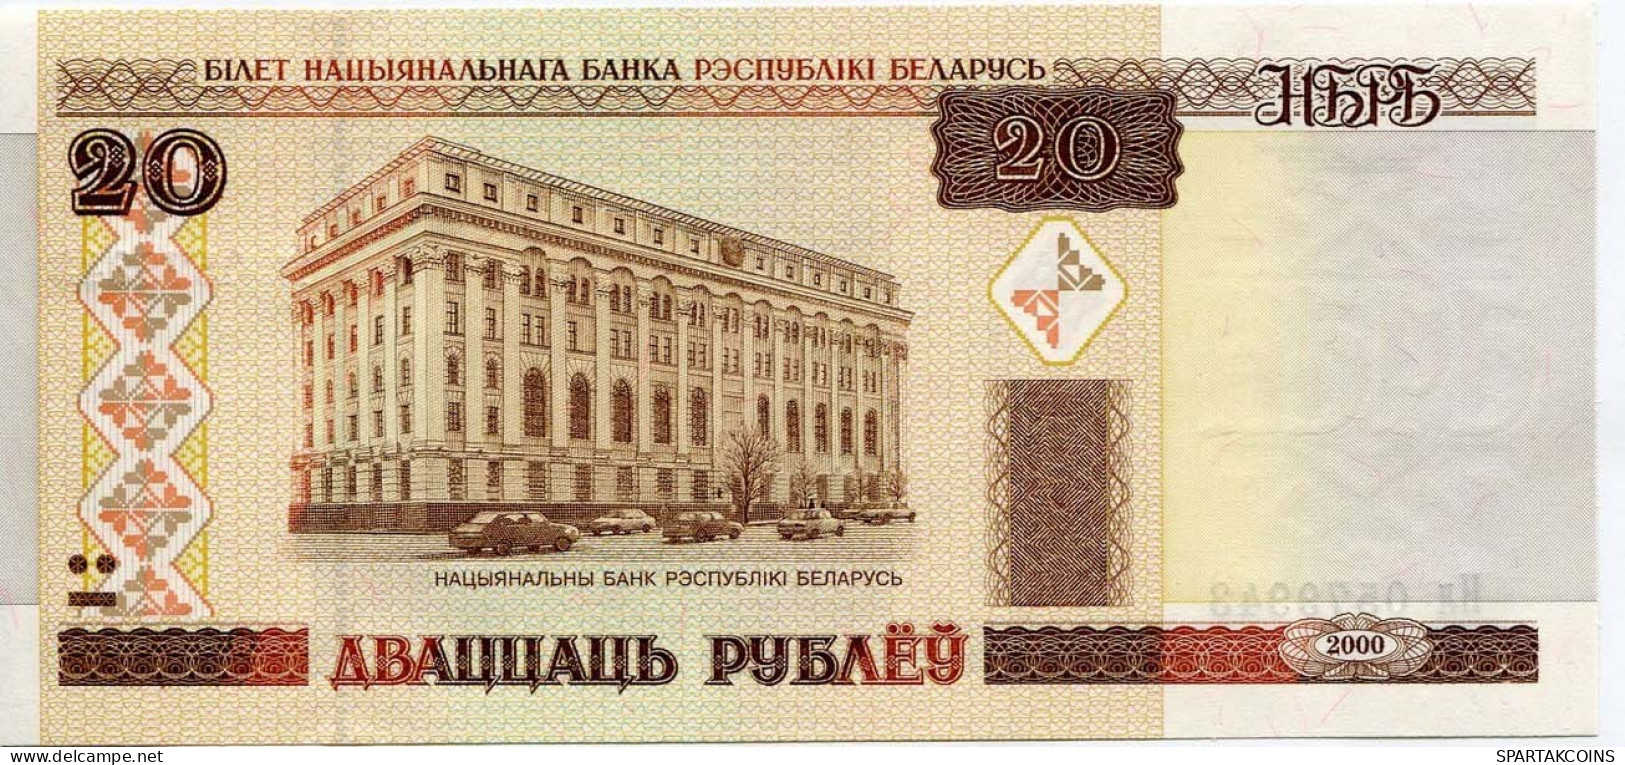 BELARUS 20 RUBLES 2000 The National Bank Of Belarusians Paper Money Banknote #P10201.V - Lokale Ausgaben